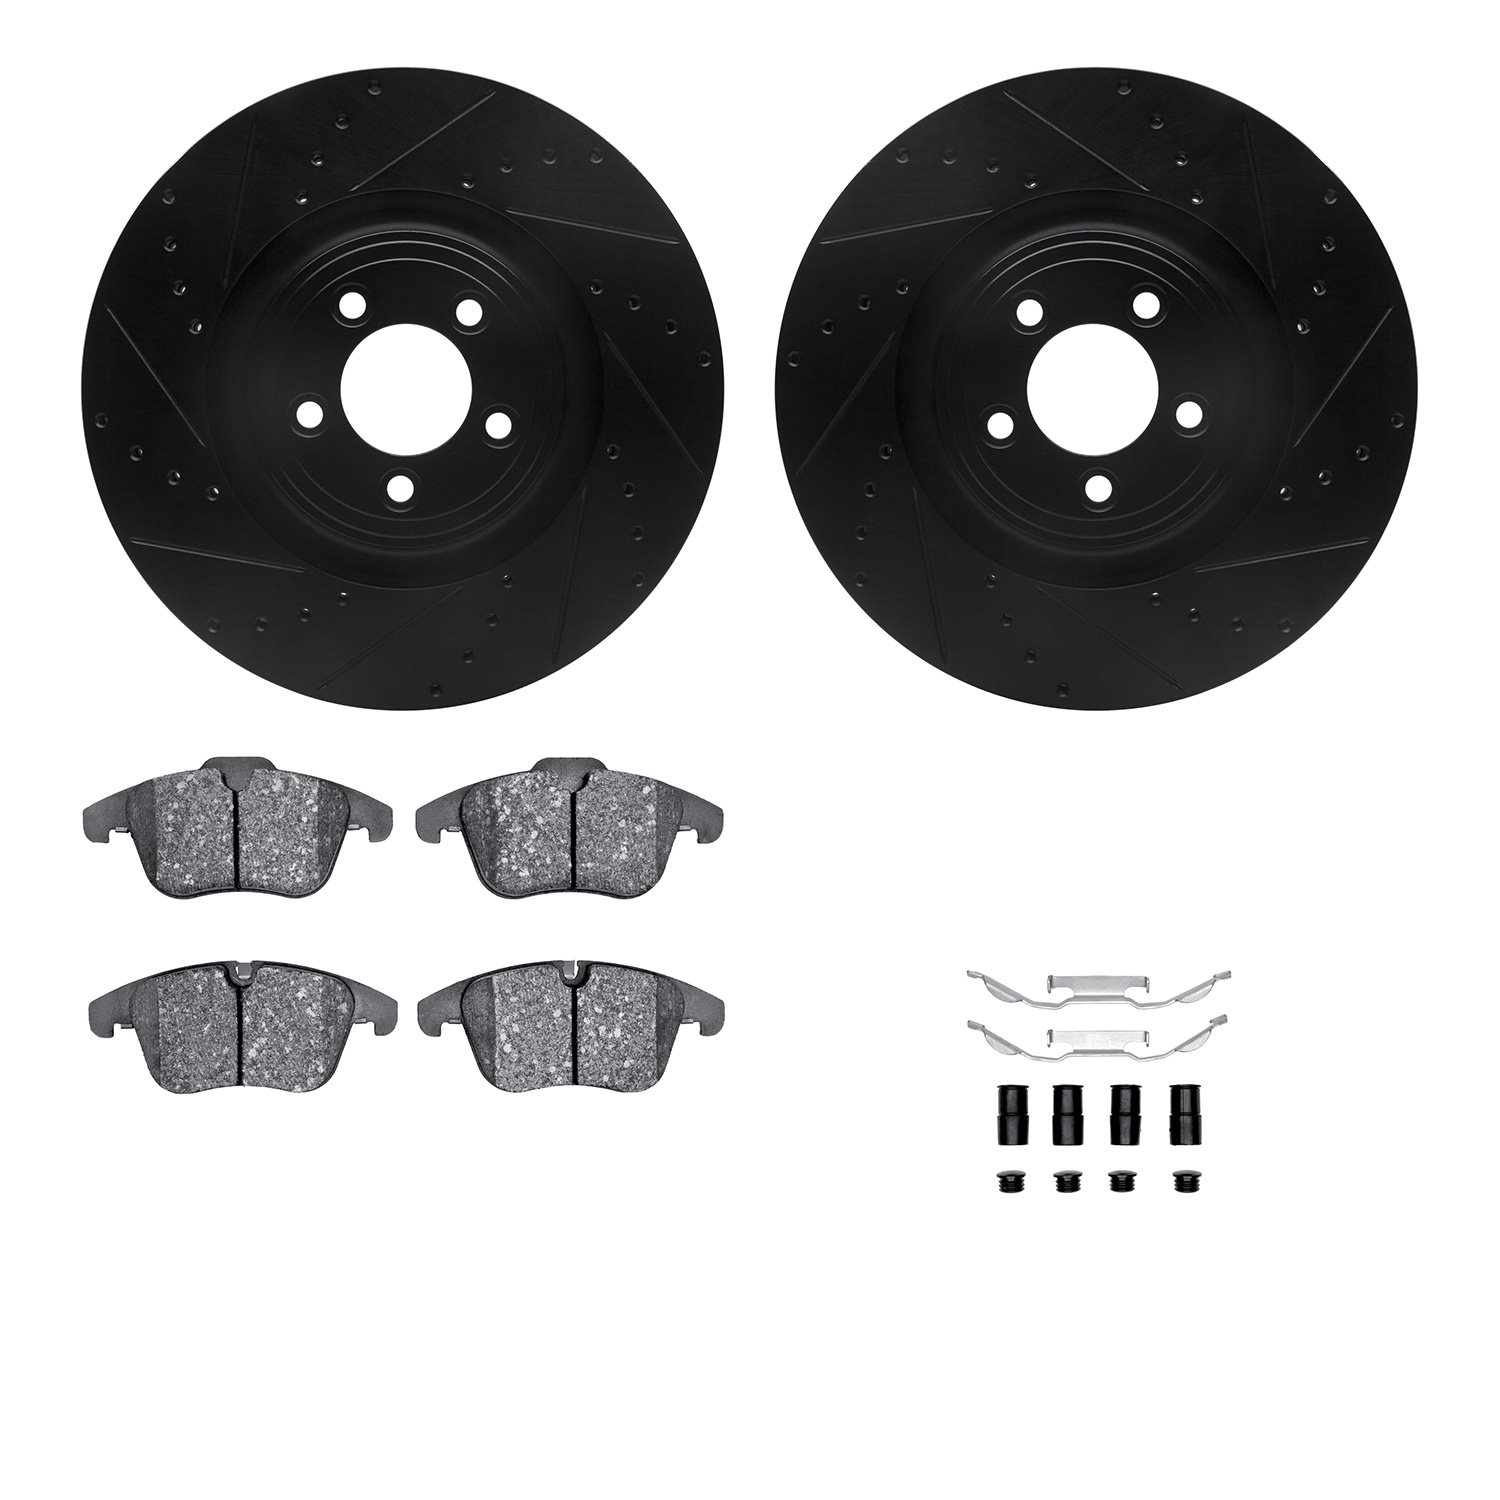 8512-20016 Drilled/Slotted Brake Rotors w/5000 Advanced Brake Pads Kit & Hardware [Black], 2013-2015 Jaguar, Position: Front